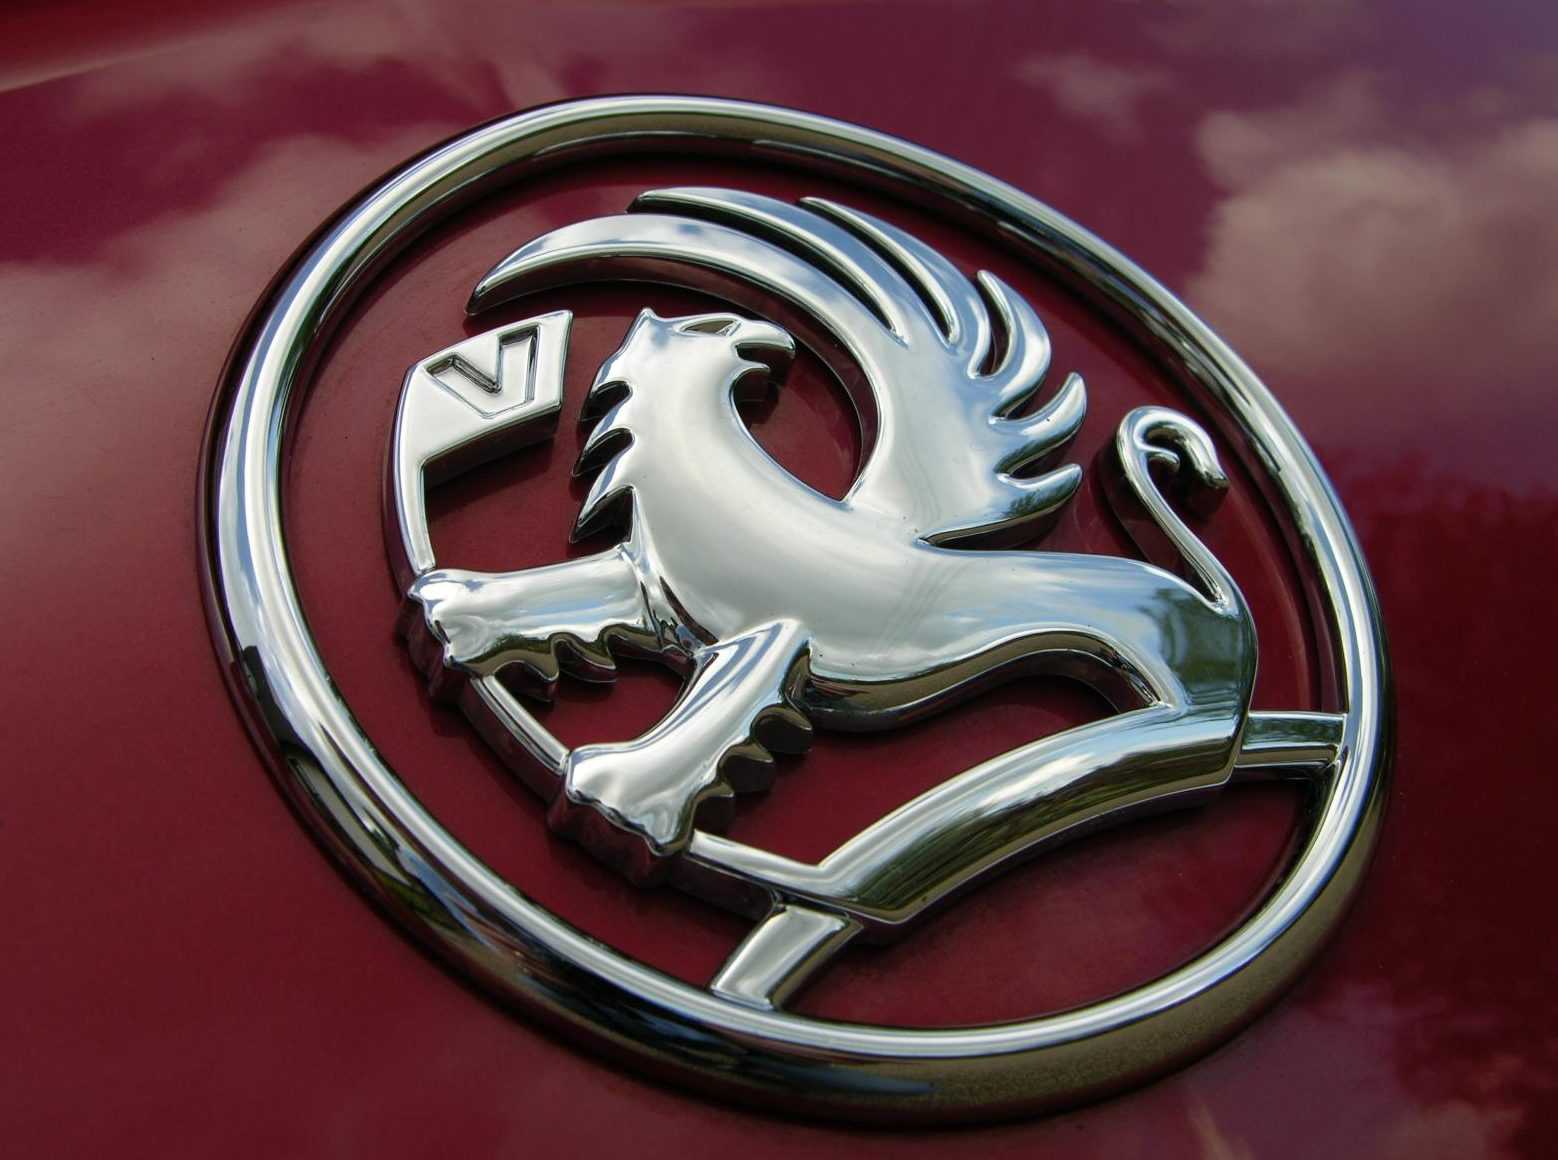 История бренда «вольво»: логотип компании, популярные модели авто, развитие в 21 веке